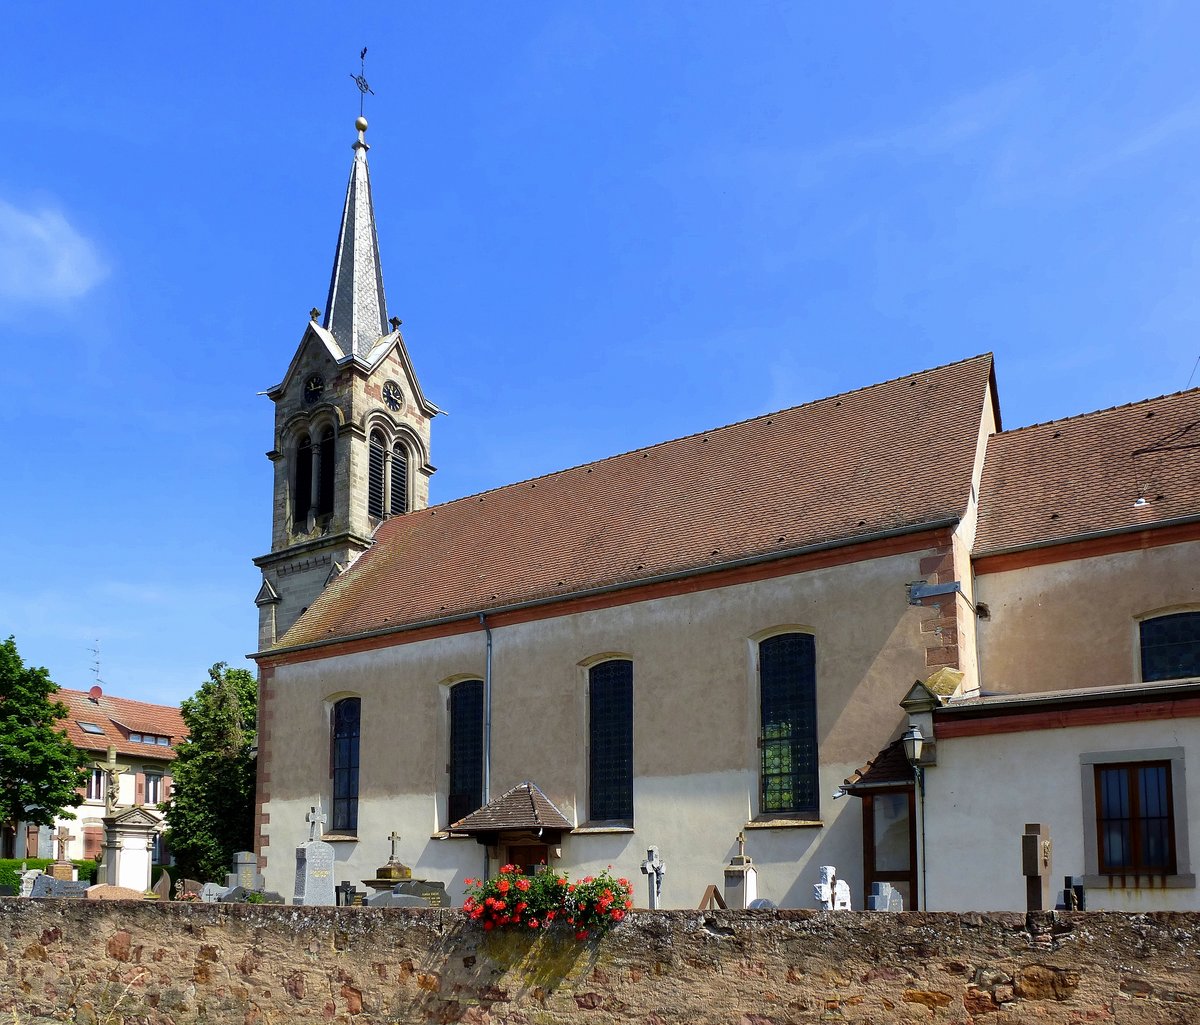 Saasenheim im Elsaß, die Kirche St.Johannis der Täufer, eingetragen als historisches Denkmal, Juni 2016 